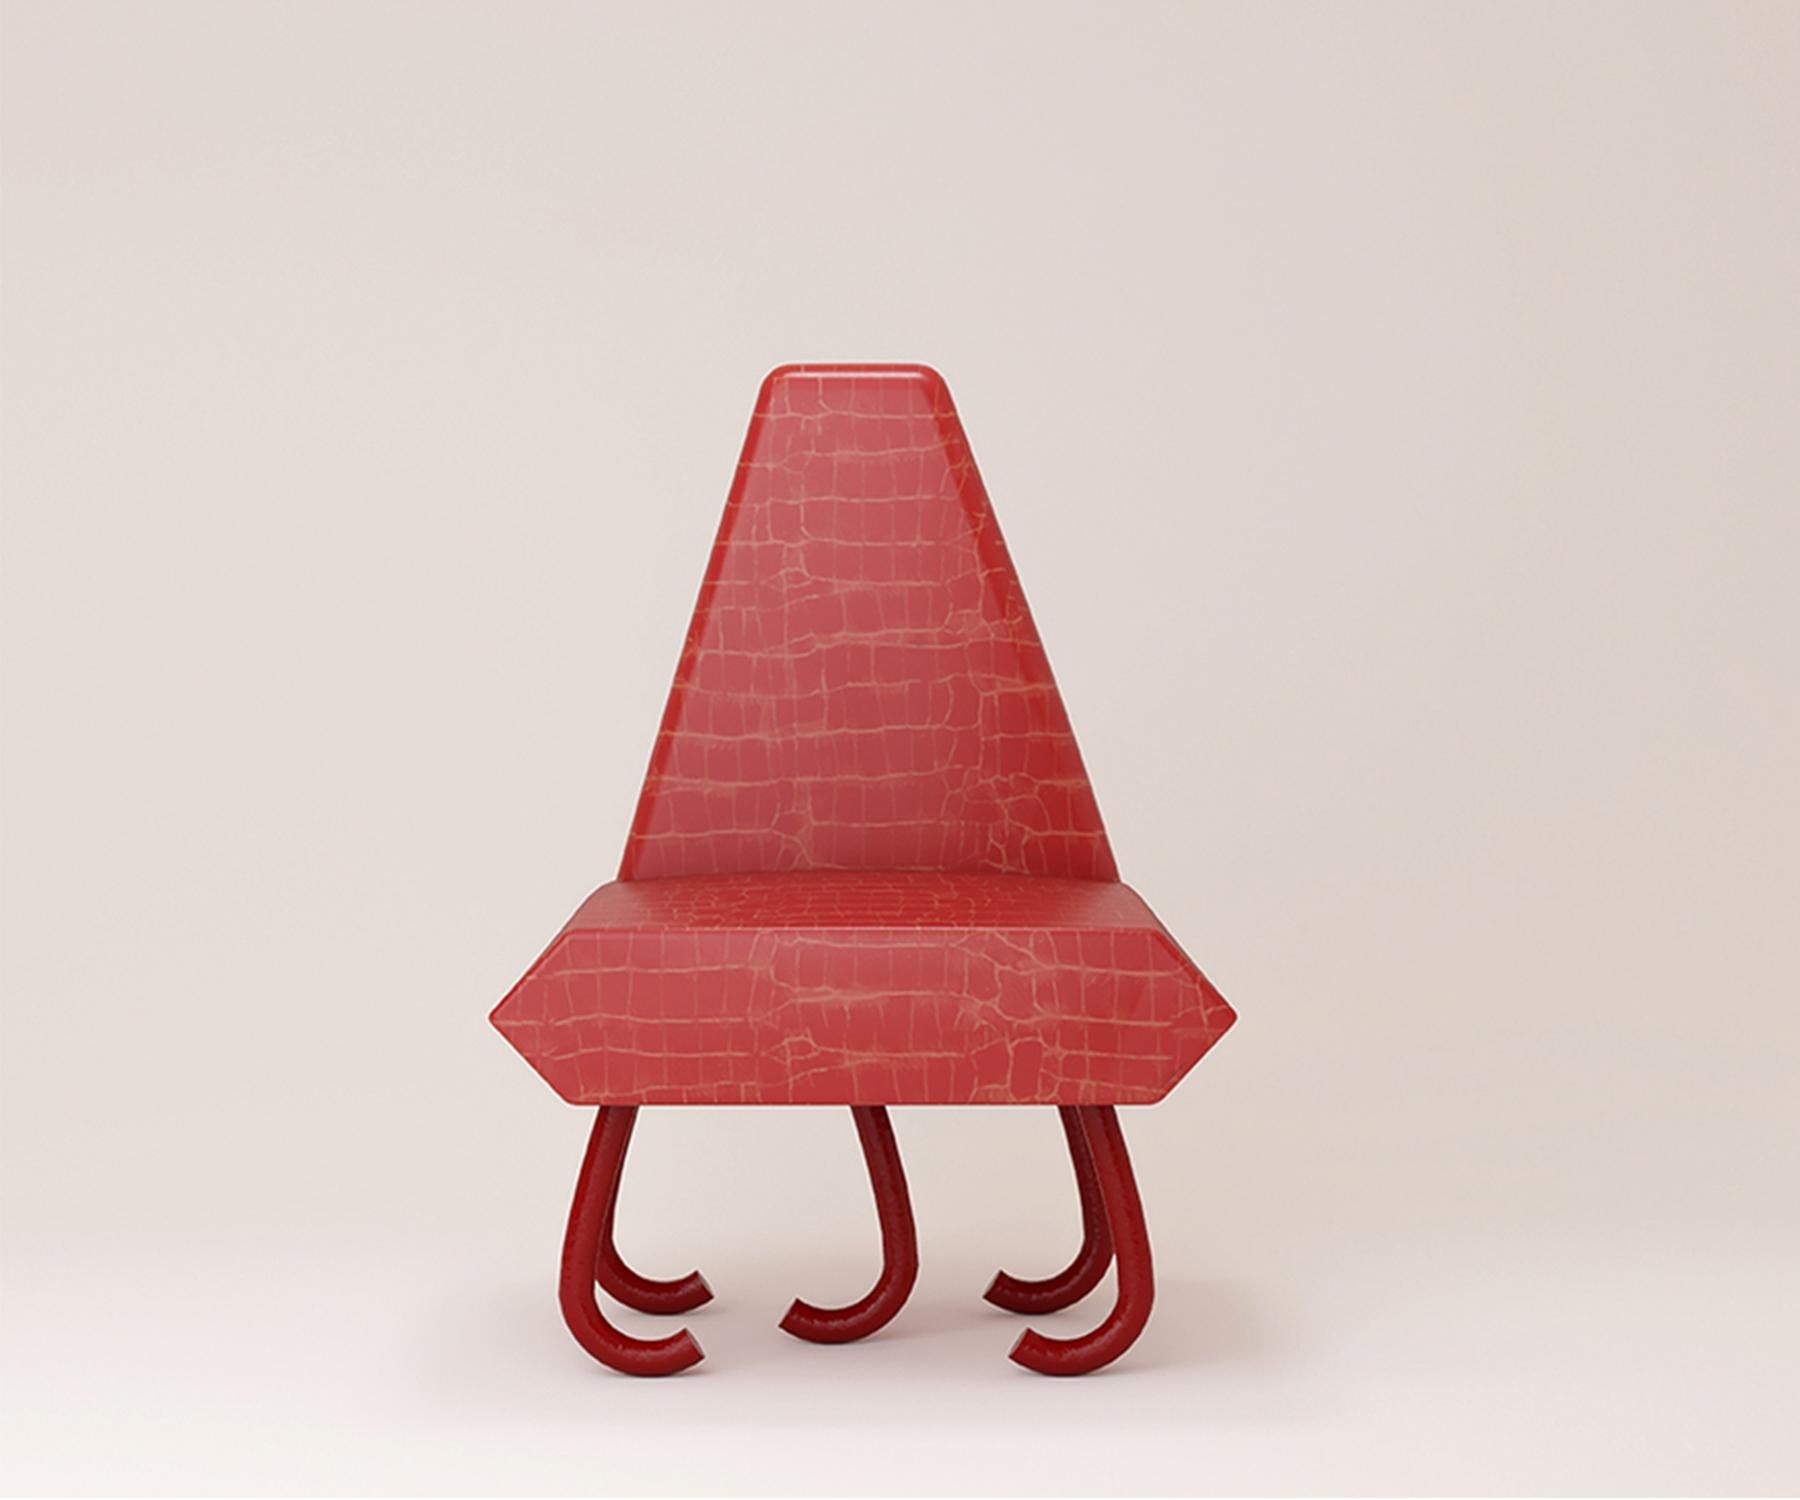 Ein auffälliges Ledermuster macht diesen Stuhl zum perfekten Begleiter. Mit geometrisch geformtem Sitz, auf fünf geschwungenen Beinen

Dimension. B 72 x T 70 x H 46 cm
Material. Struktur aus Holz, mit Leder.

